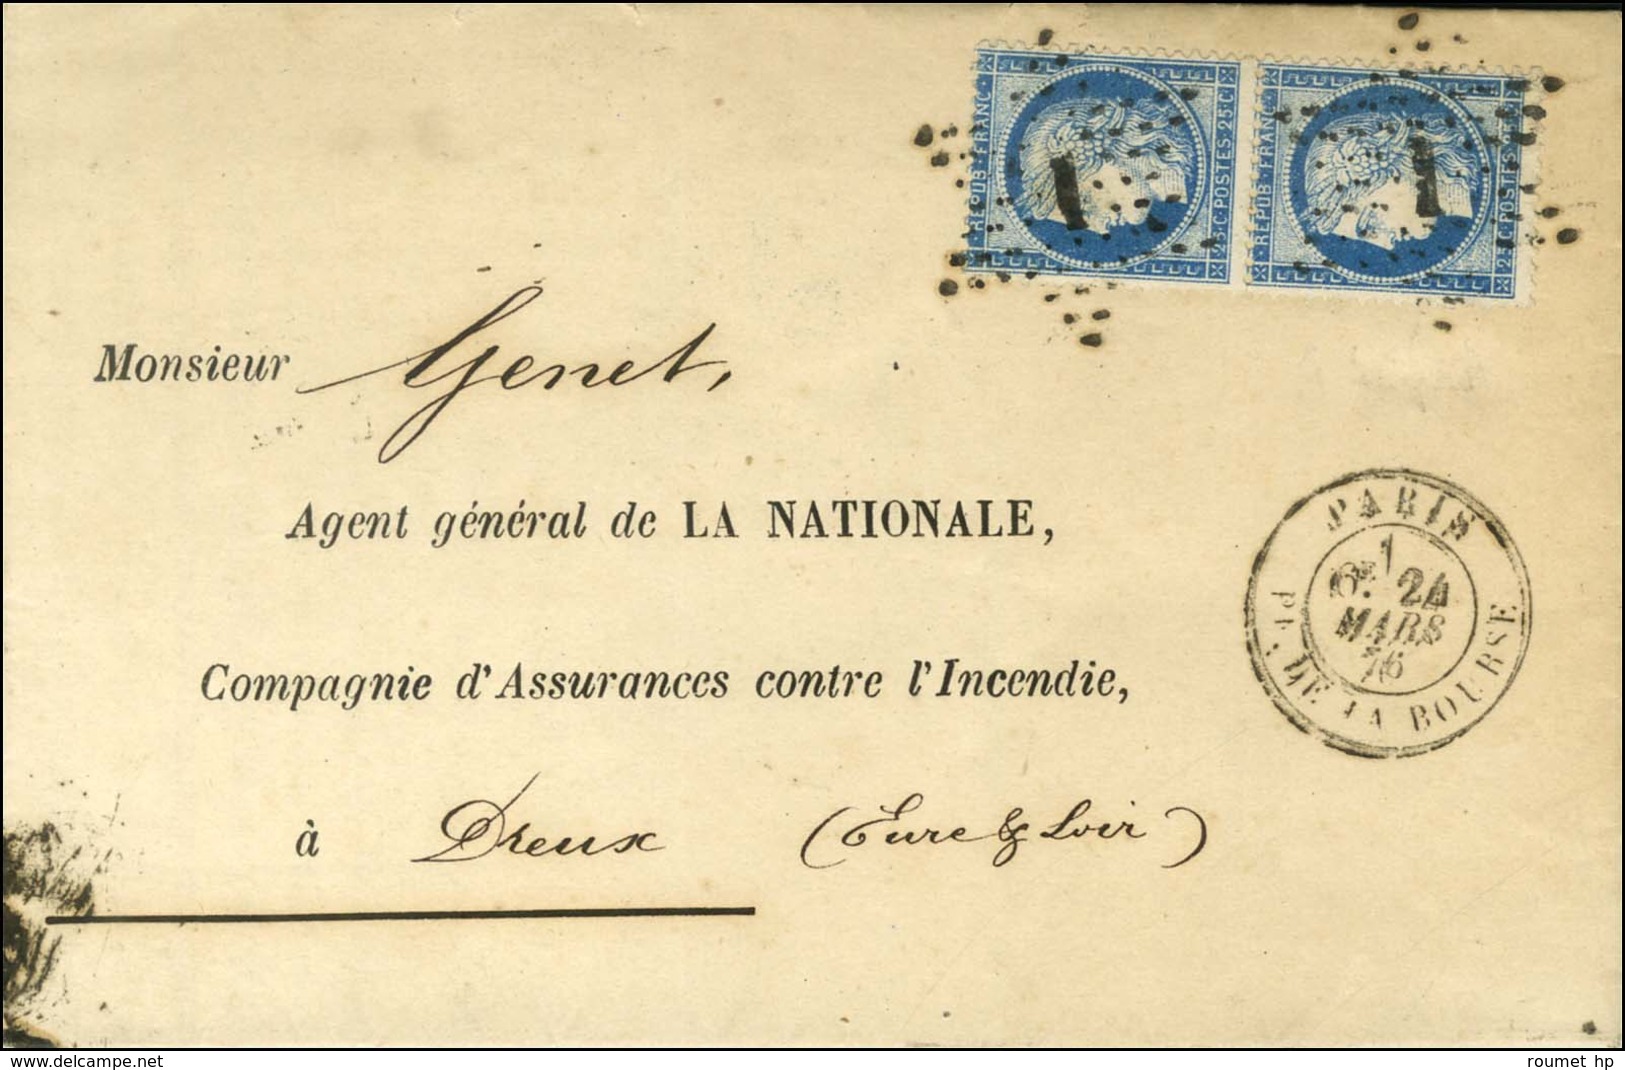 Etoile 1 Cassée (Pothion N° 3658) / N° 60 Type III Paire Càd PARIS / PL. DE LA BOURSE Sur Lettre Pour Dreux. 1876. - SUP - 1871-1875 Ceres